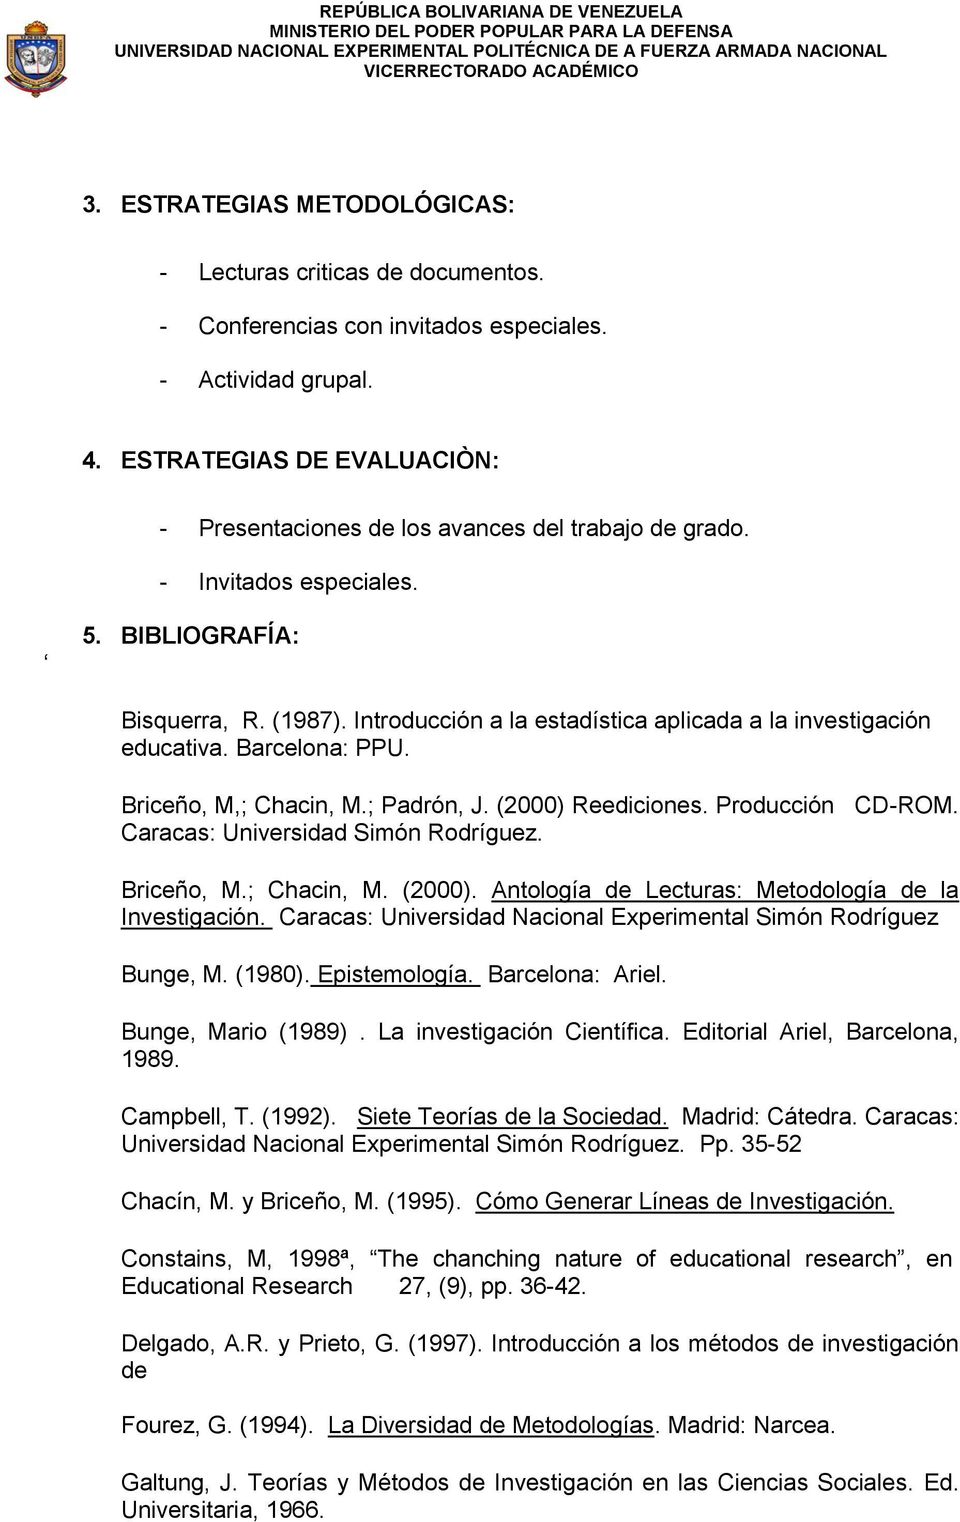 Introducción a la estadística aplicada a la investigación educativa. Barcelona: PPU. Briceño, M,; Chacin, M.; Padrón, J. (2000) Reediciones. Producción CD-ROM. Caracas: Universidad Simón Rodríguez.